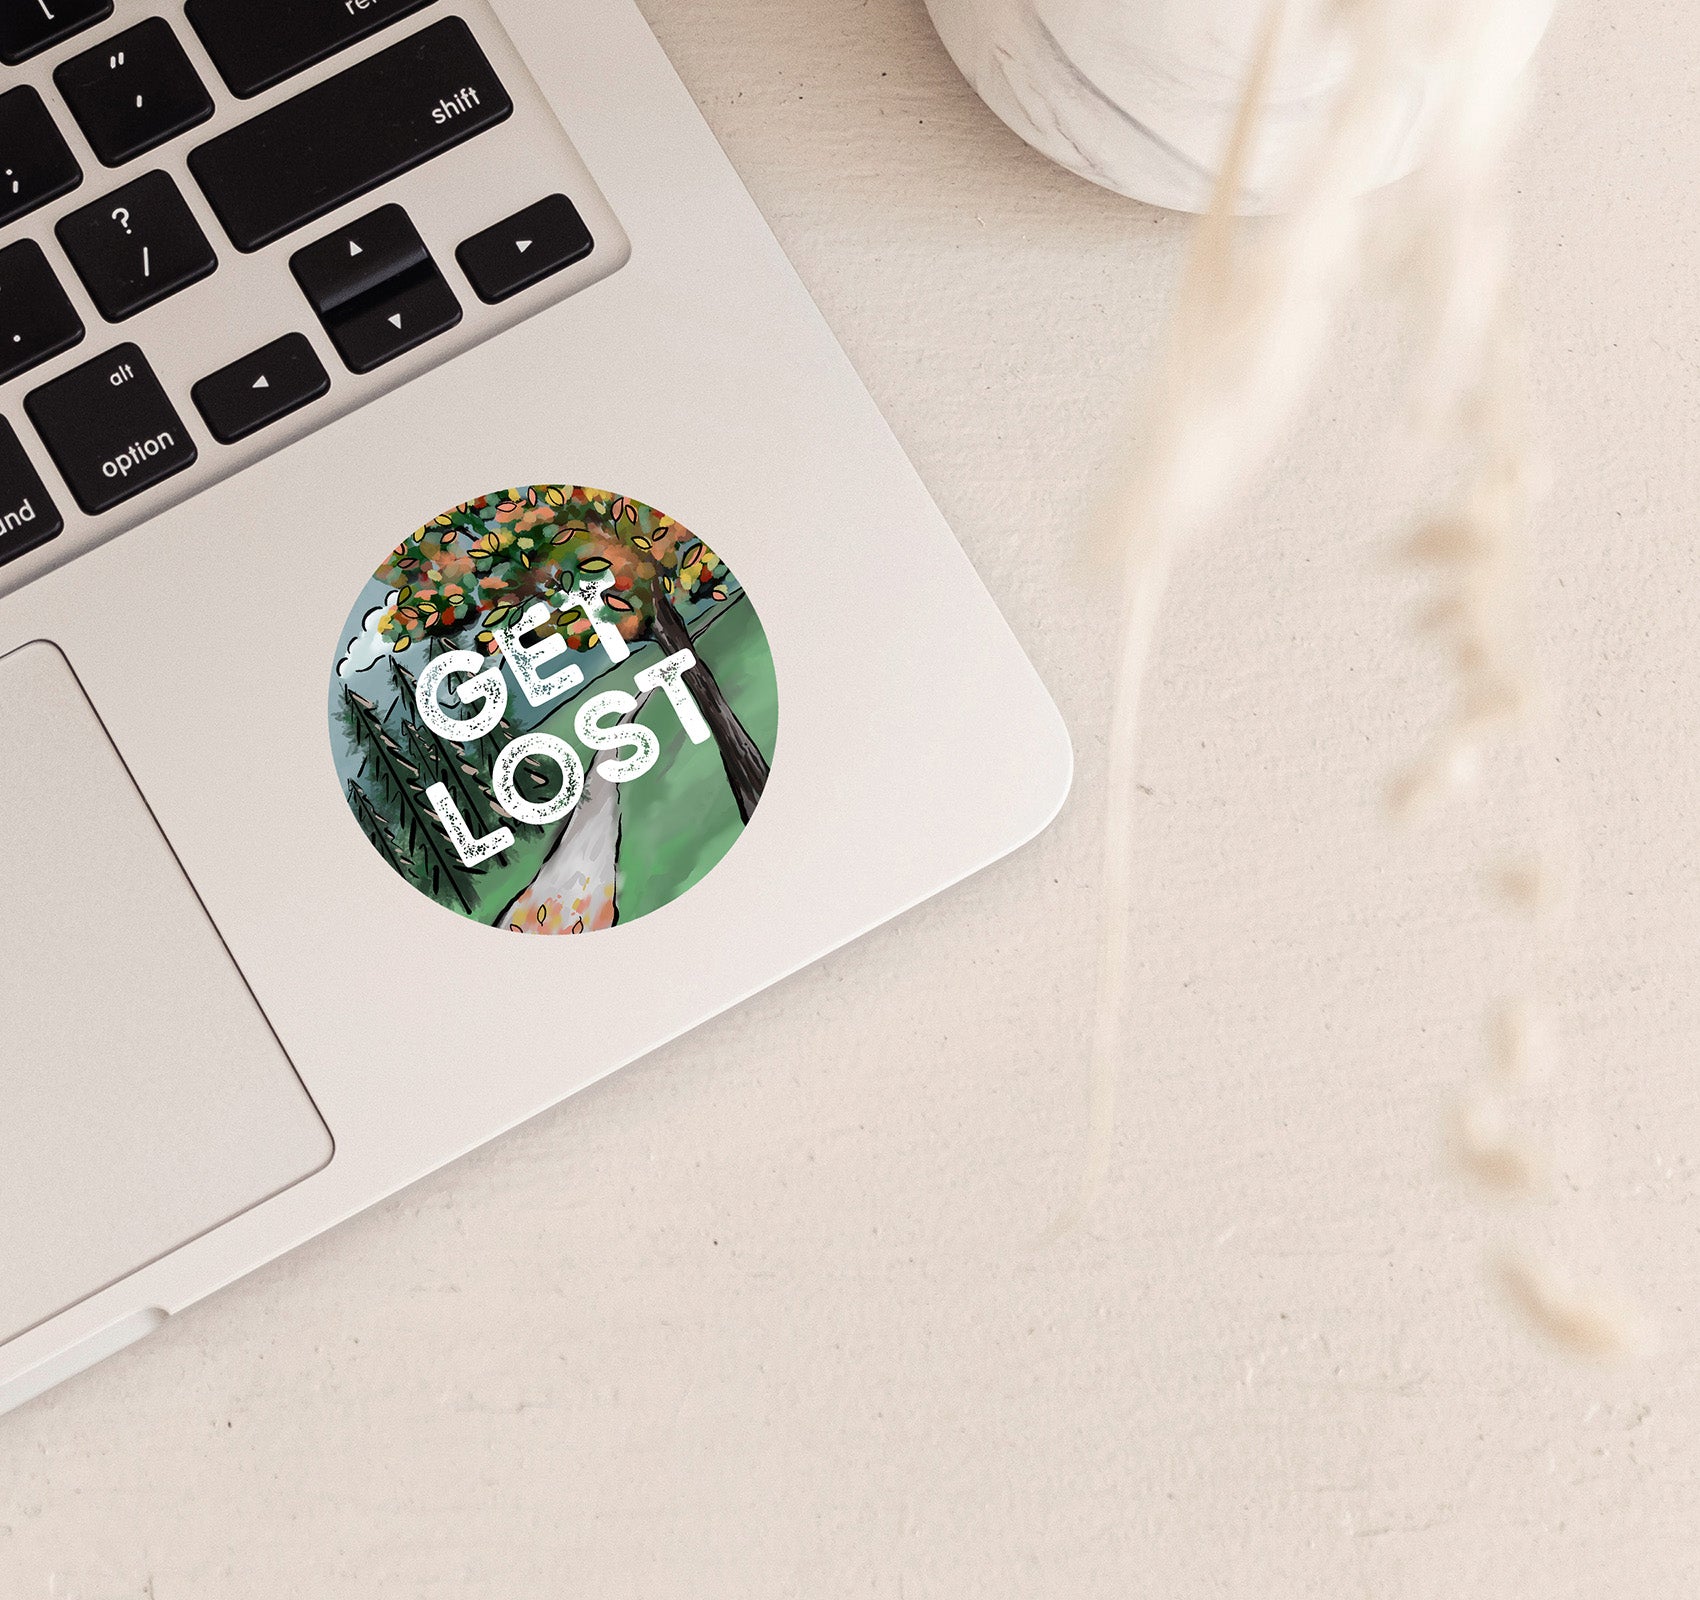 Get lost hiking laptop sticker